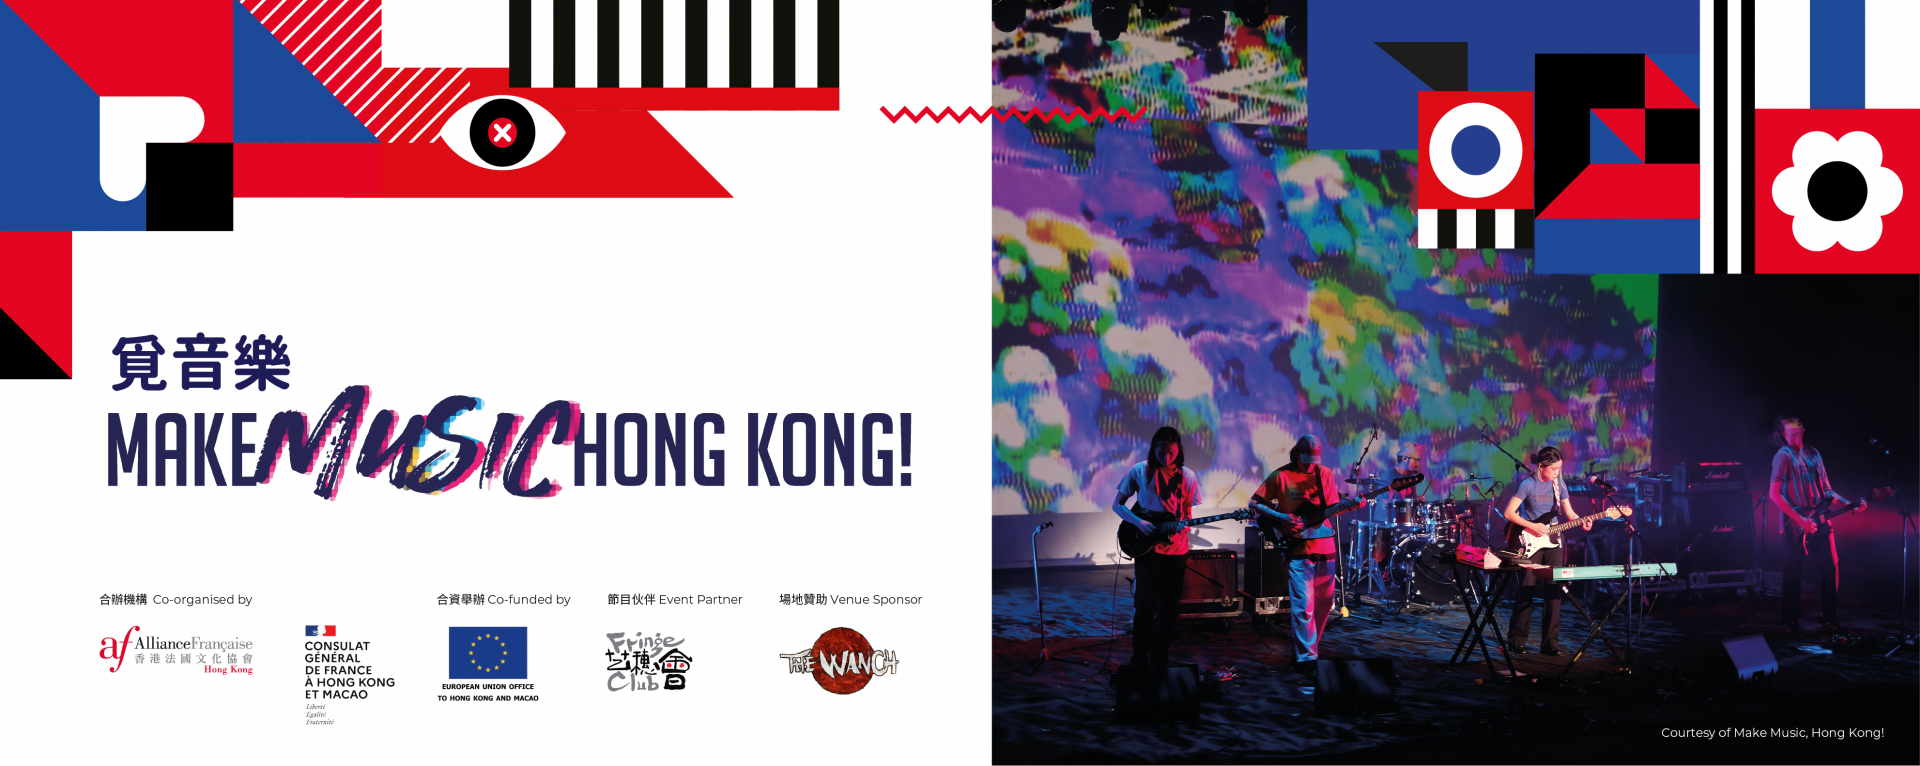 Make Music, Hong Kong!